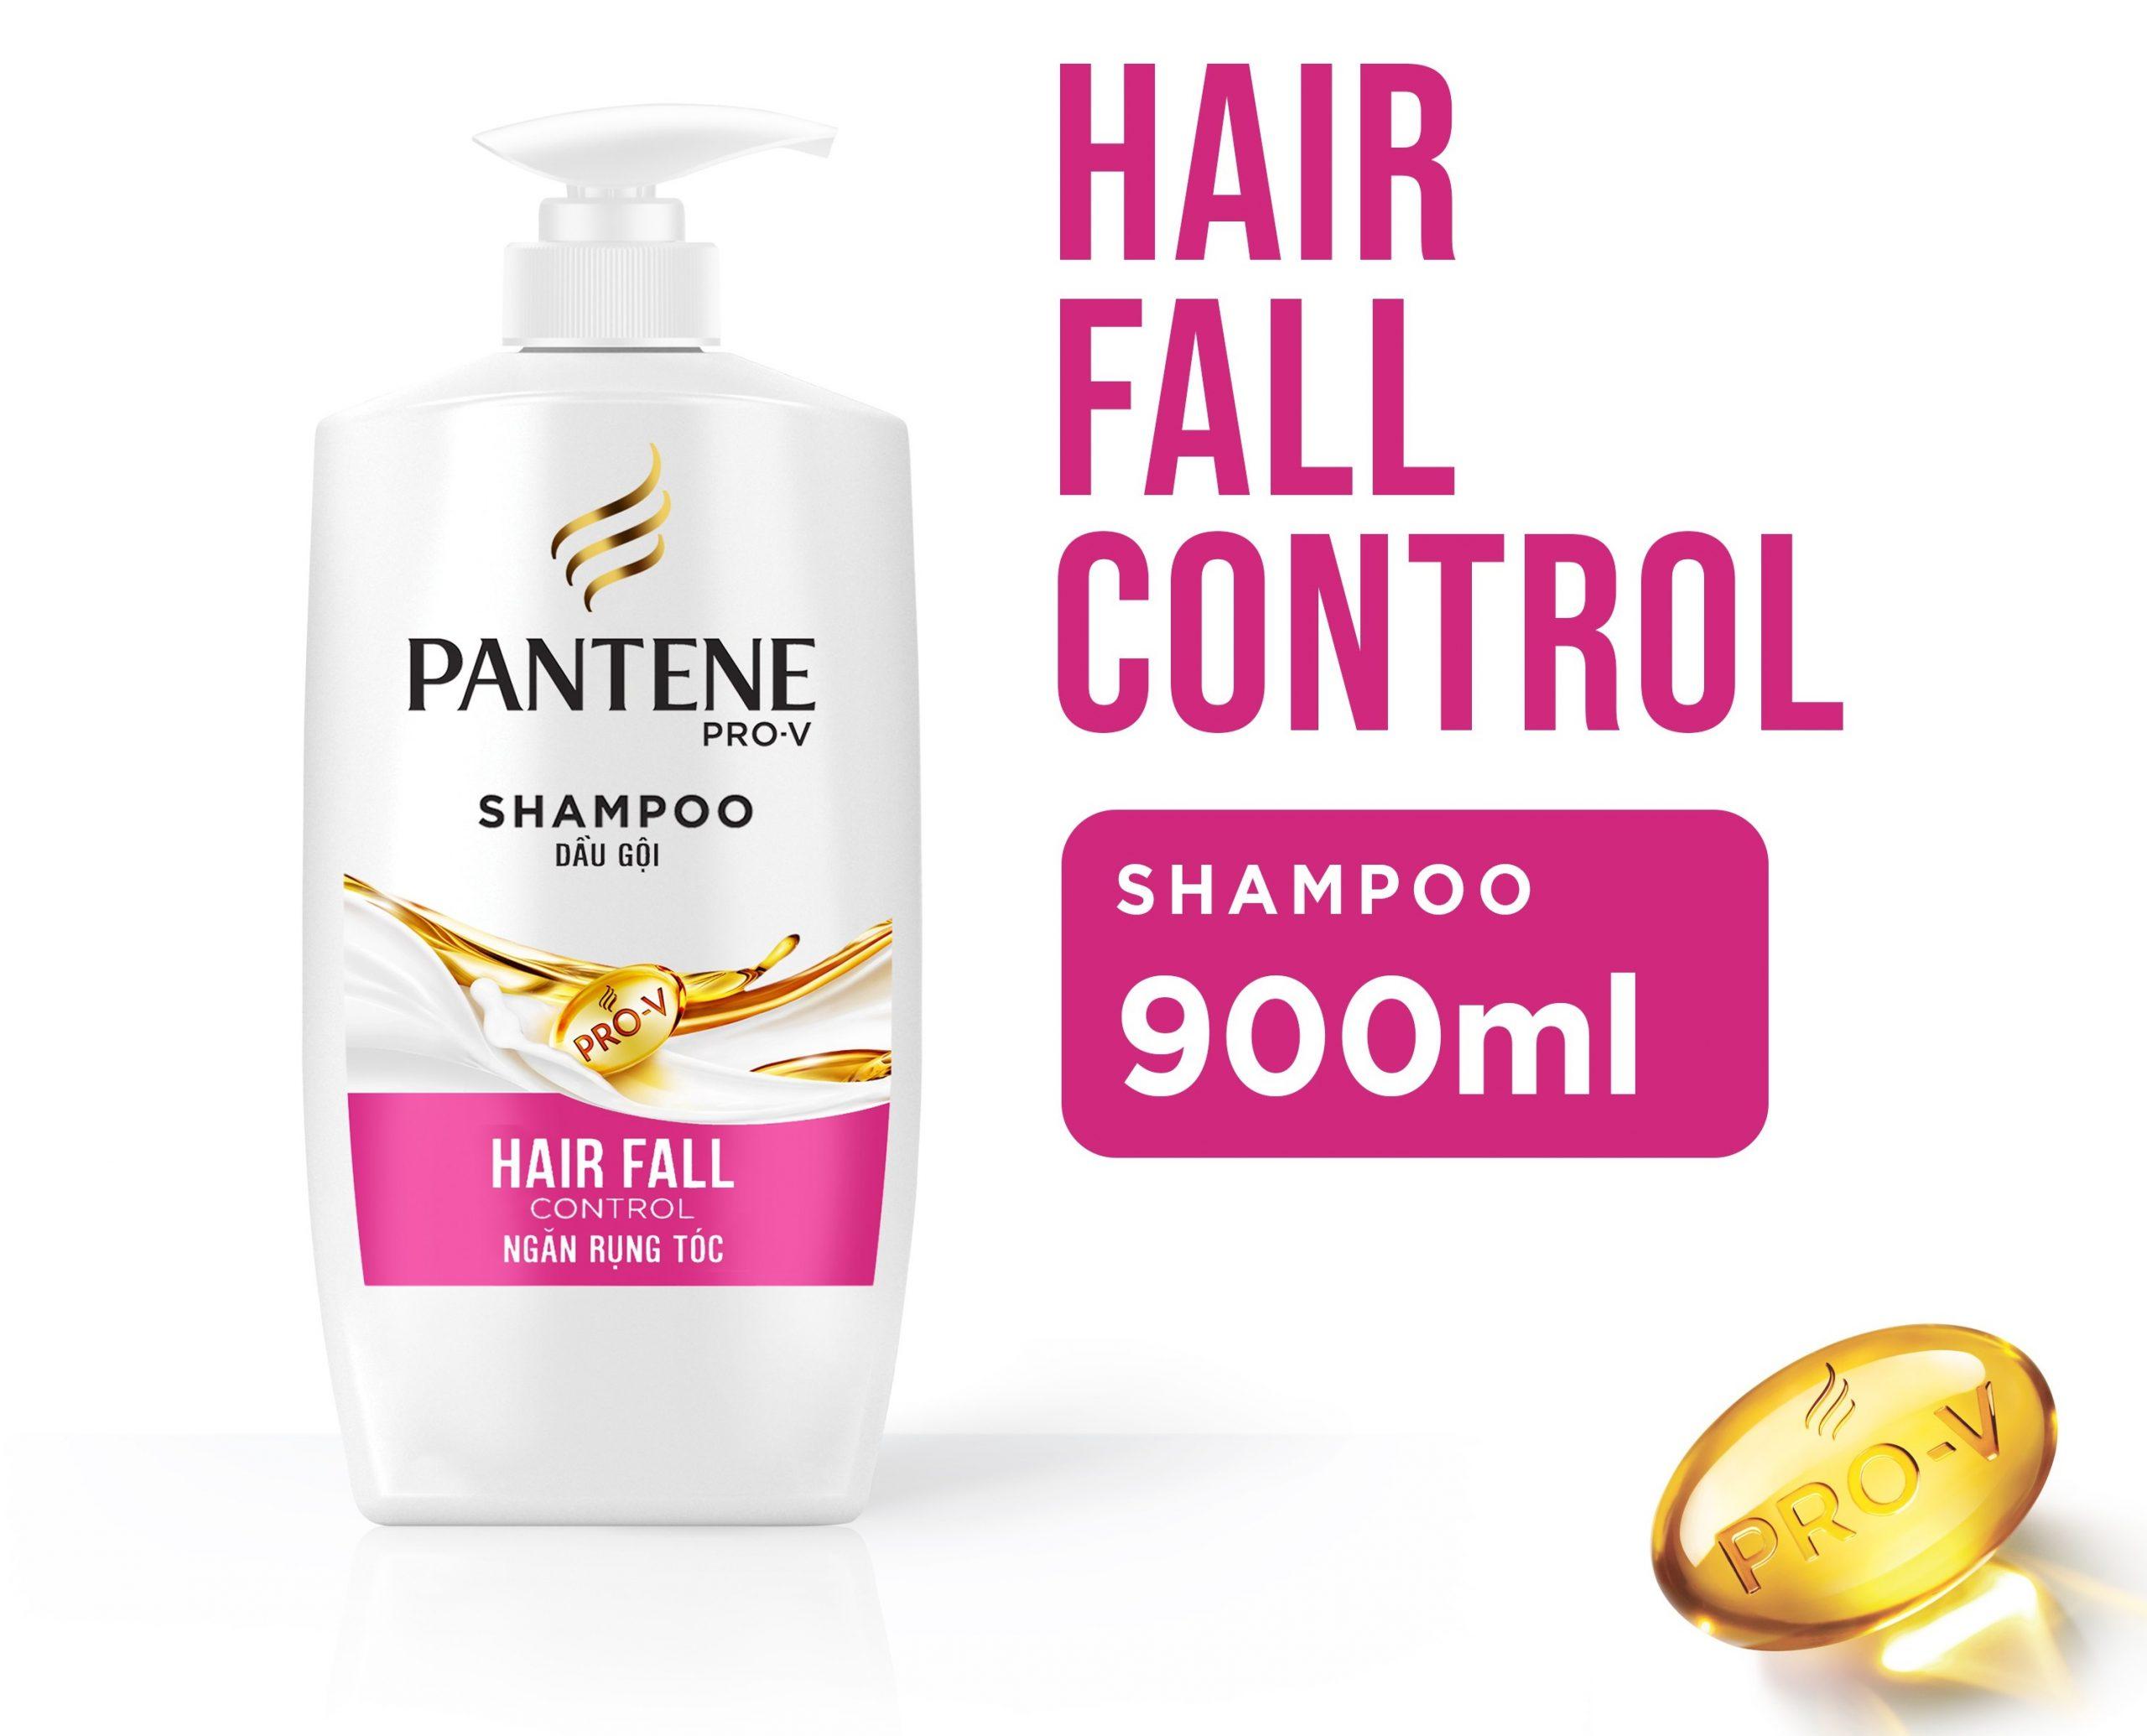 Dầu gội Sunsilk dành cho tóc nhuộm có tốt không? Có nên dùng?